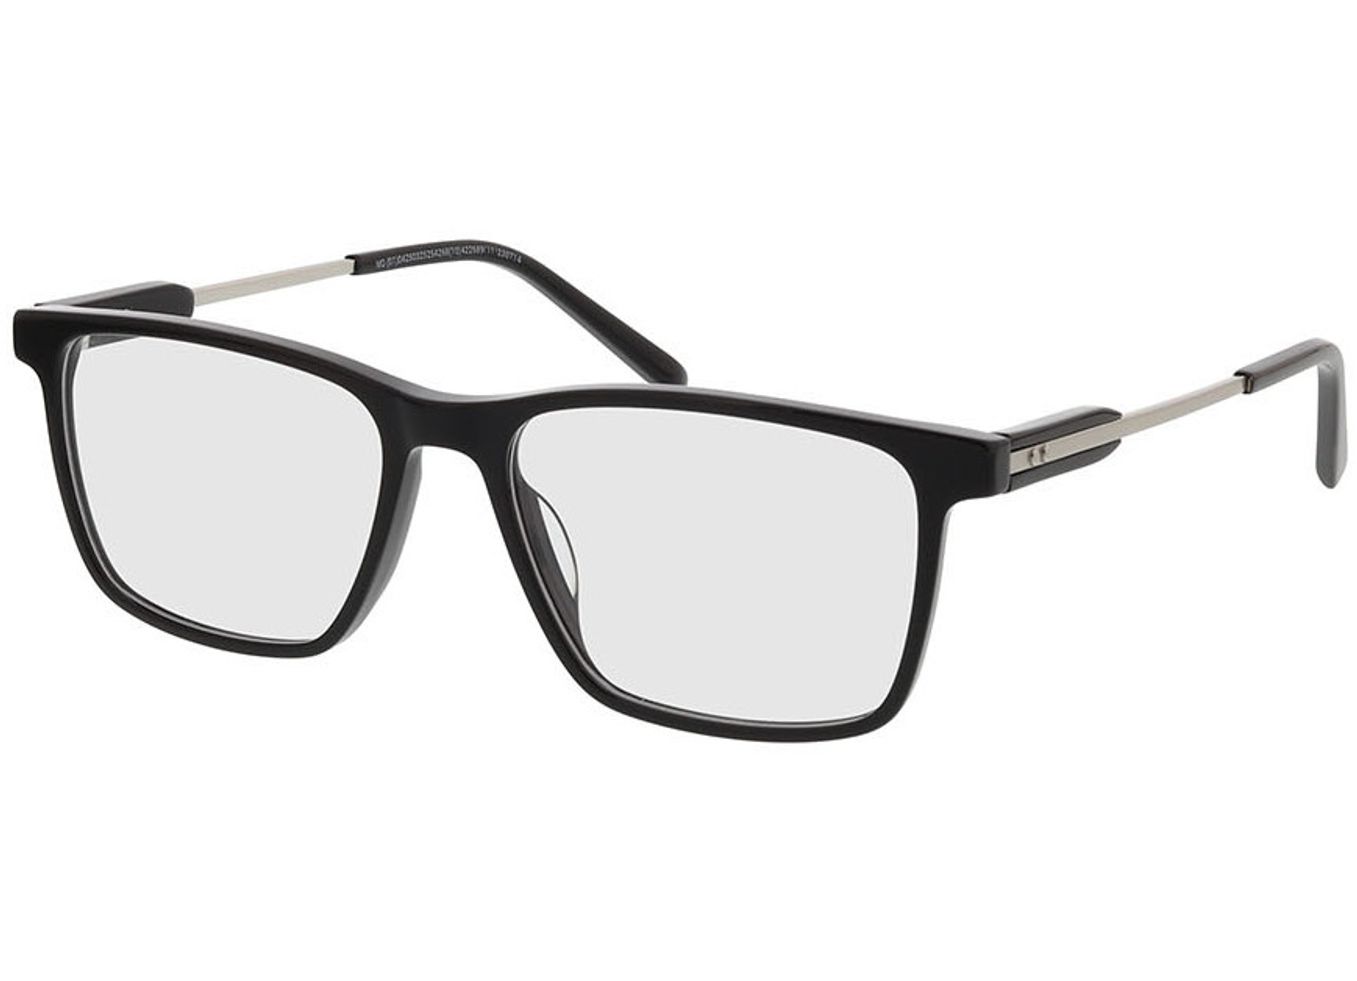 Anthony - schwarz Gleitsichtbrille, Vollrand, Rechteckig von Brille24 Collection